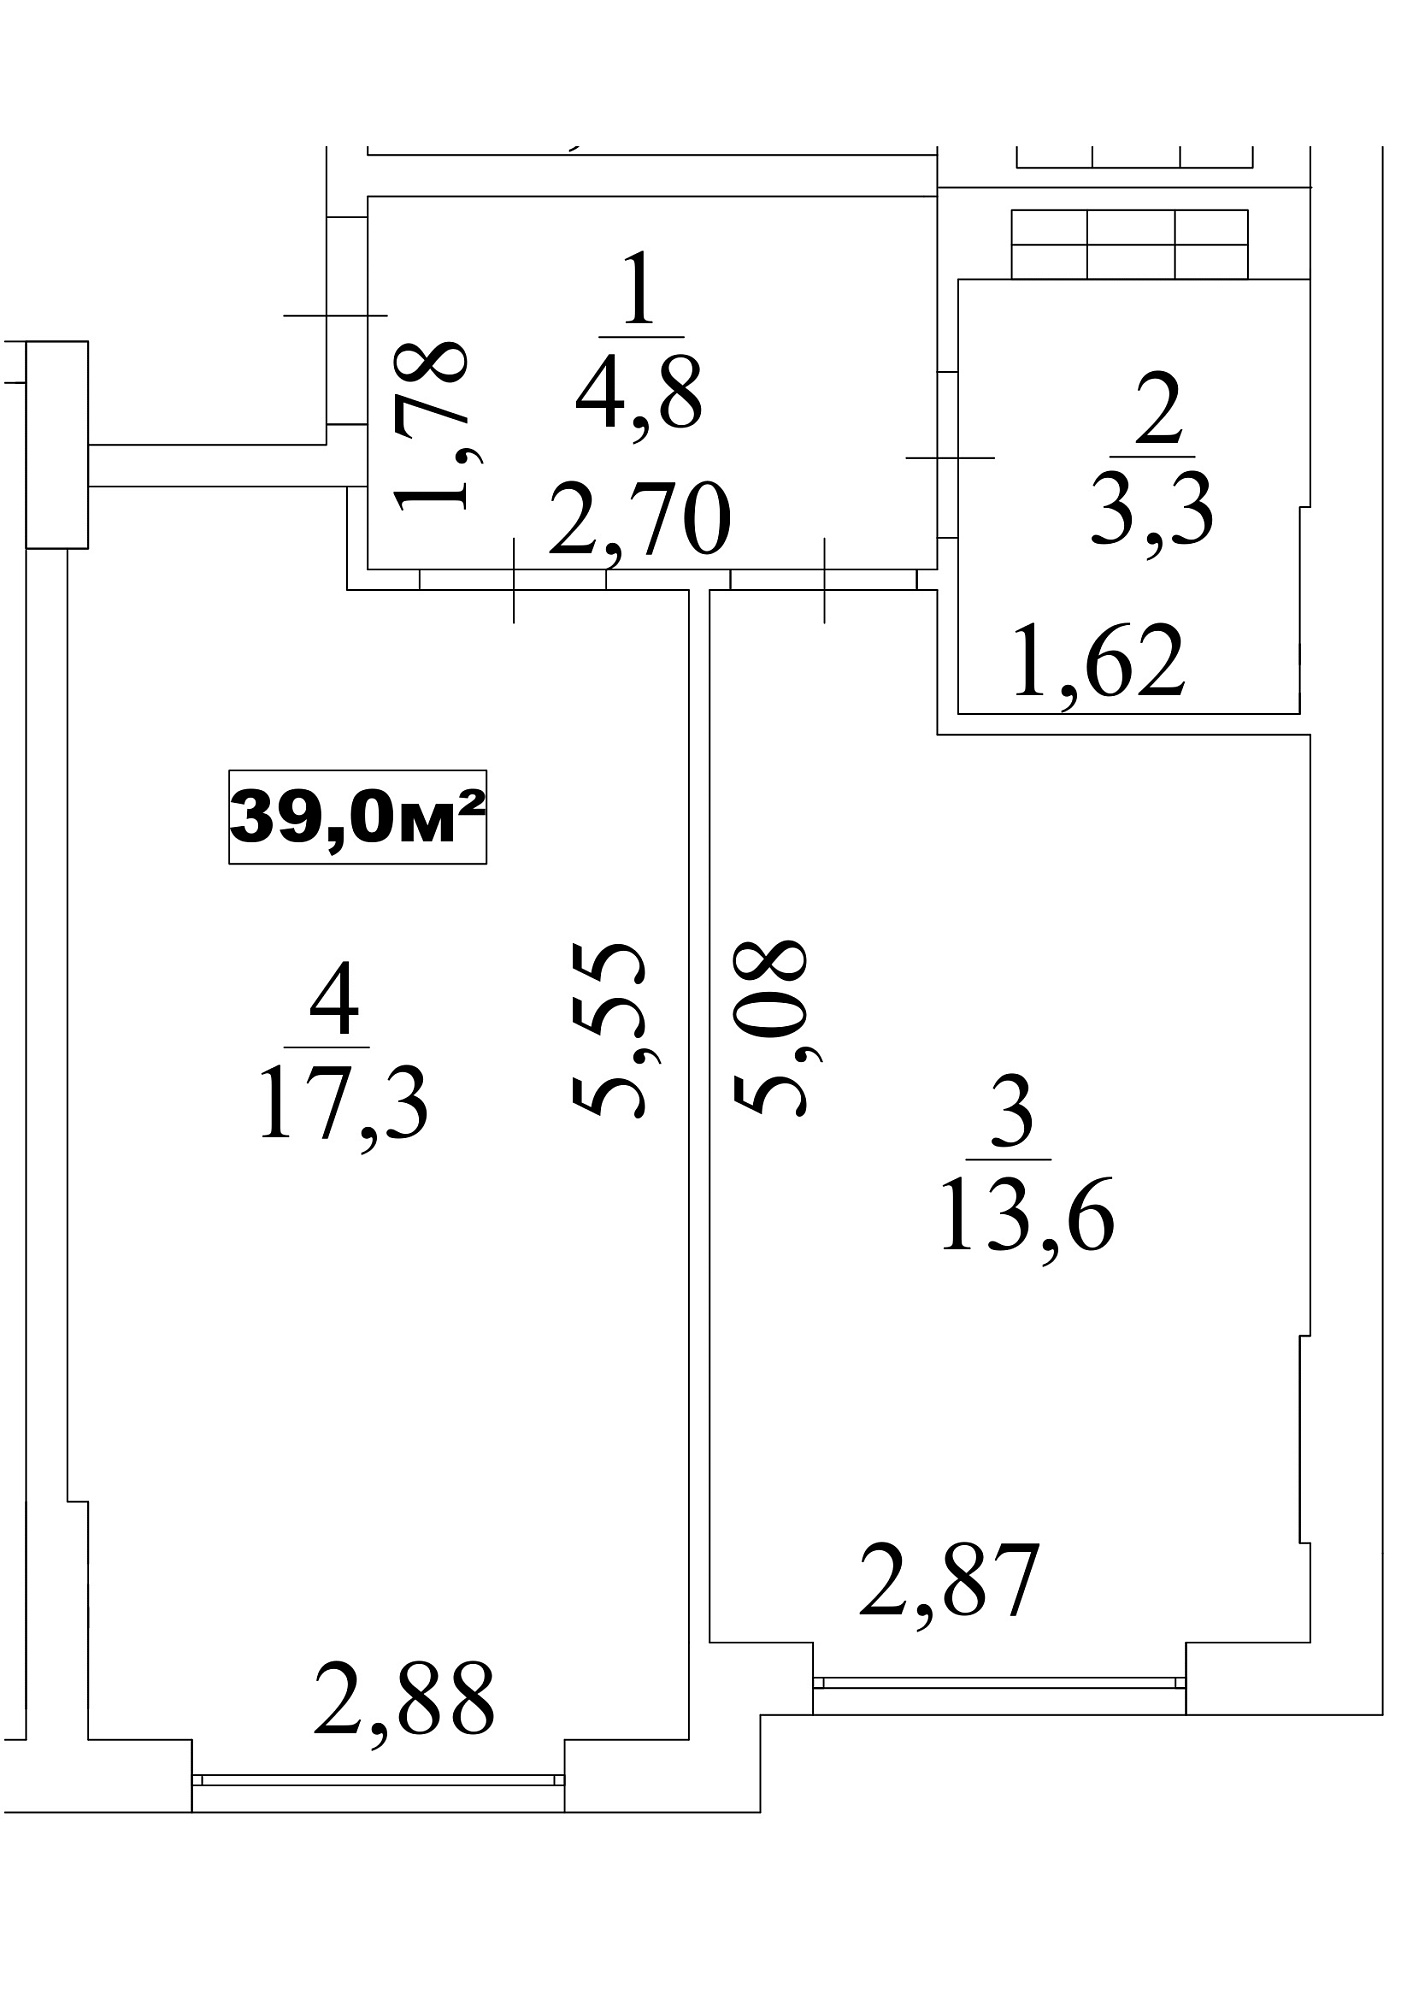 Планировка 1-к квартира площей 39м2, AB-10-04/0034в.